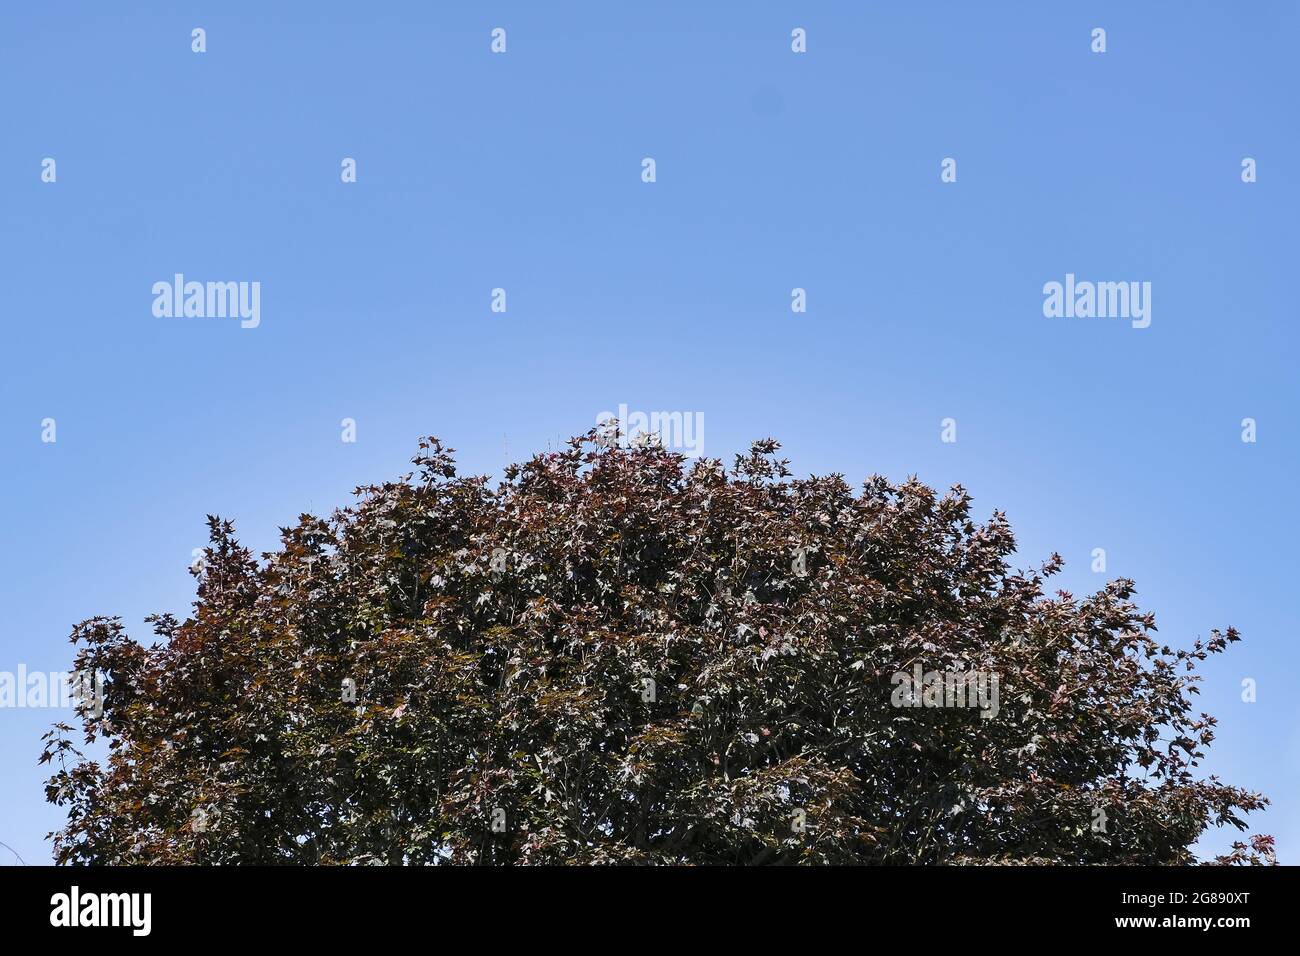 Cobre Árbol de haya (Fagus sylvatica f. purpurea) contra un cielo azul sin nubes a principios del verano Foto de stock